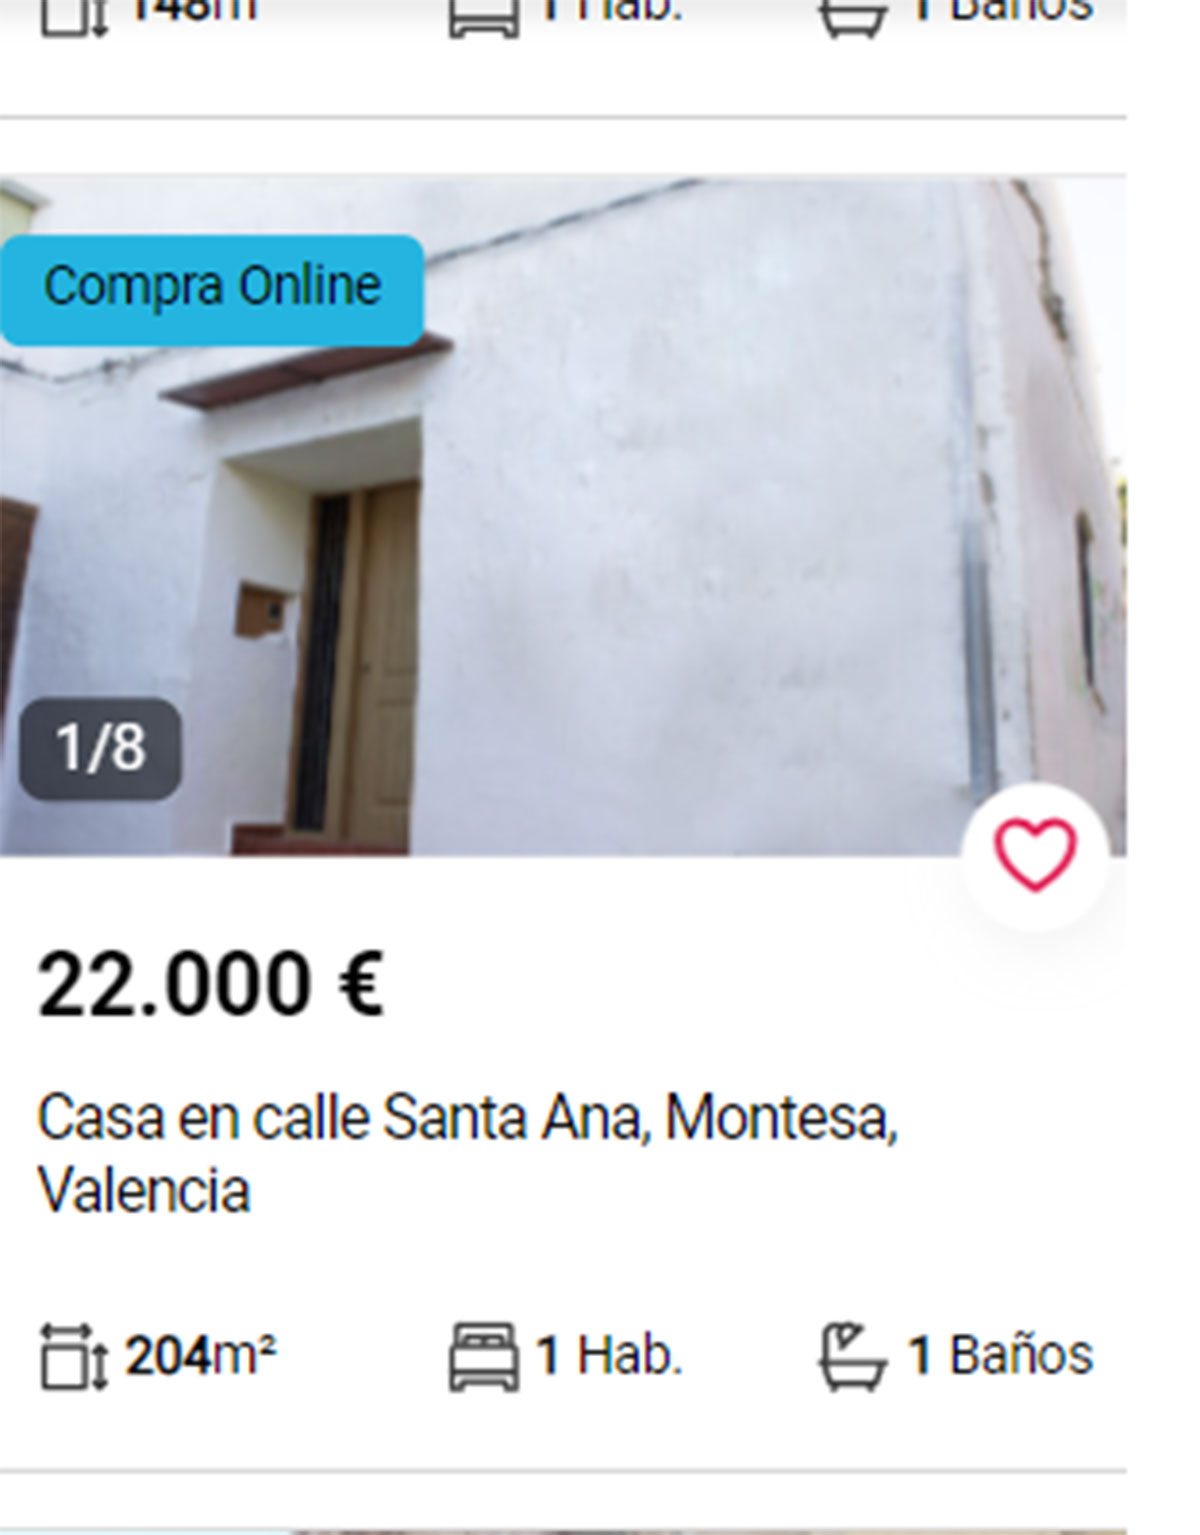 Piso en Valencia por 22.000 euros